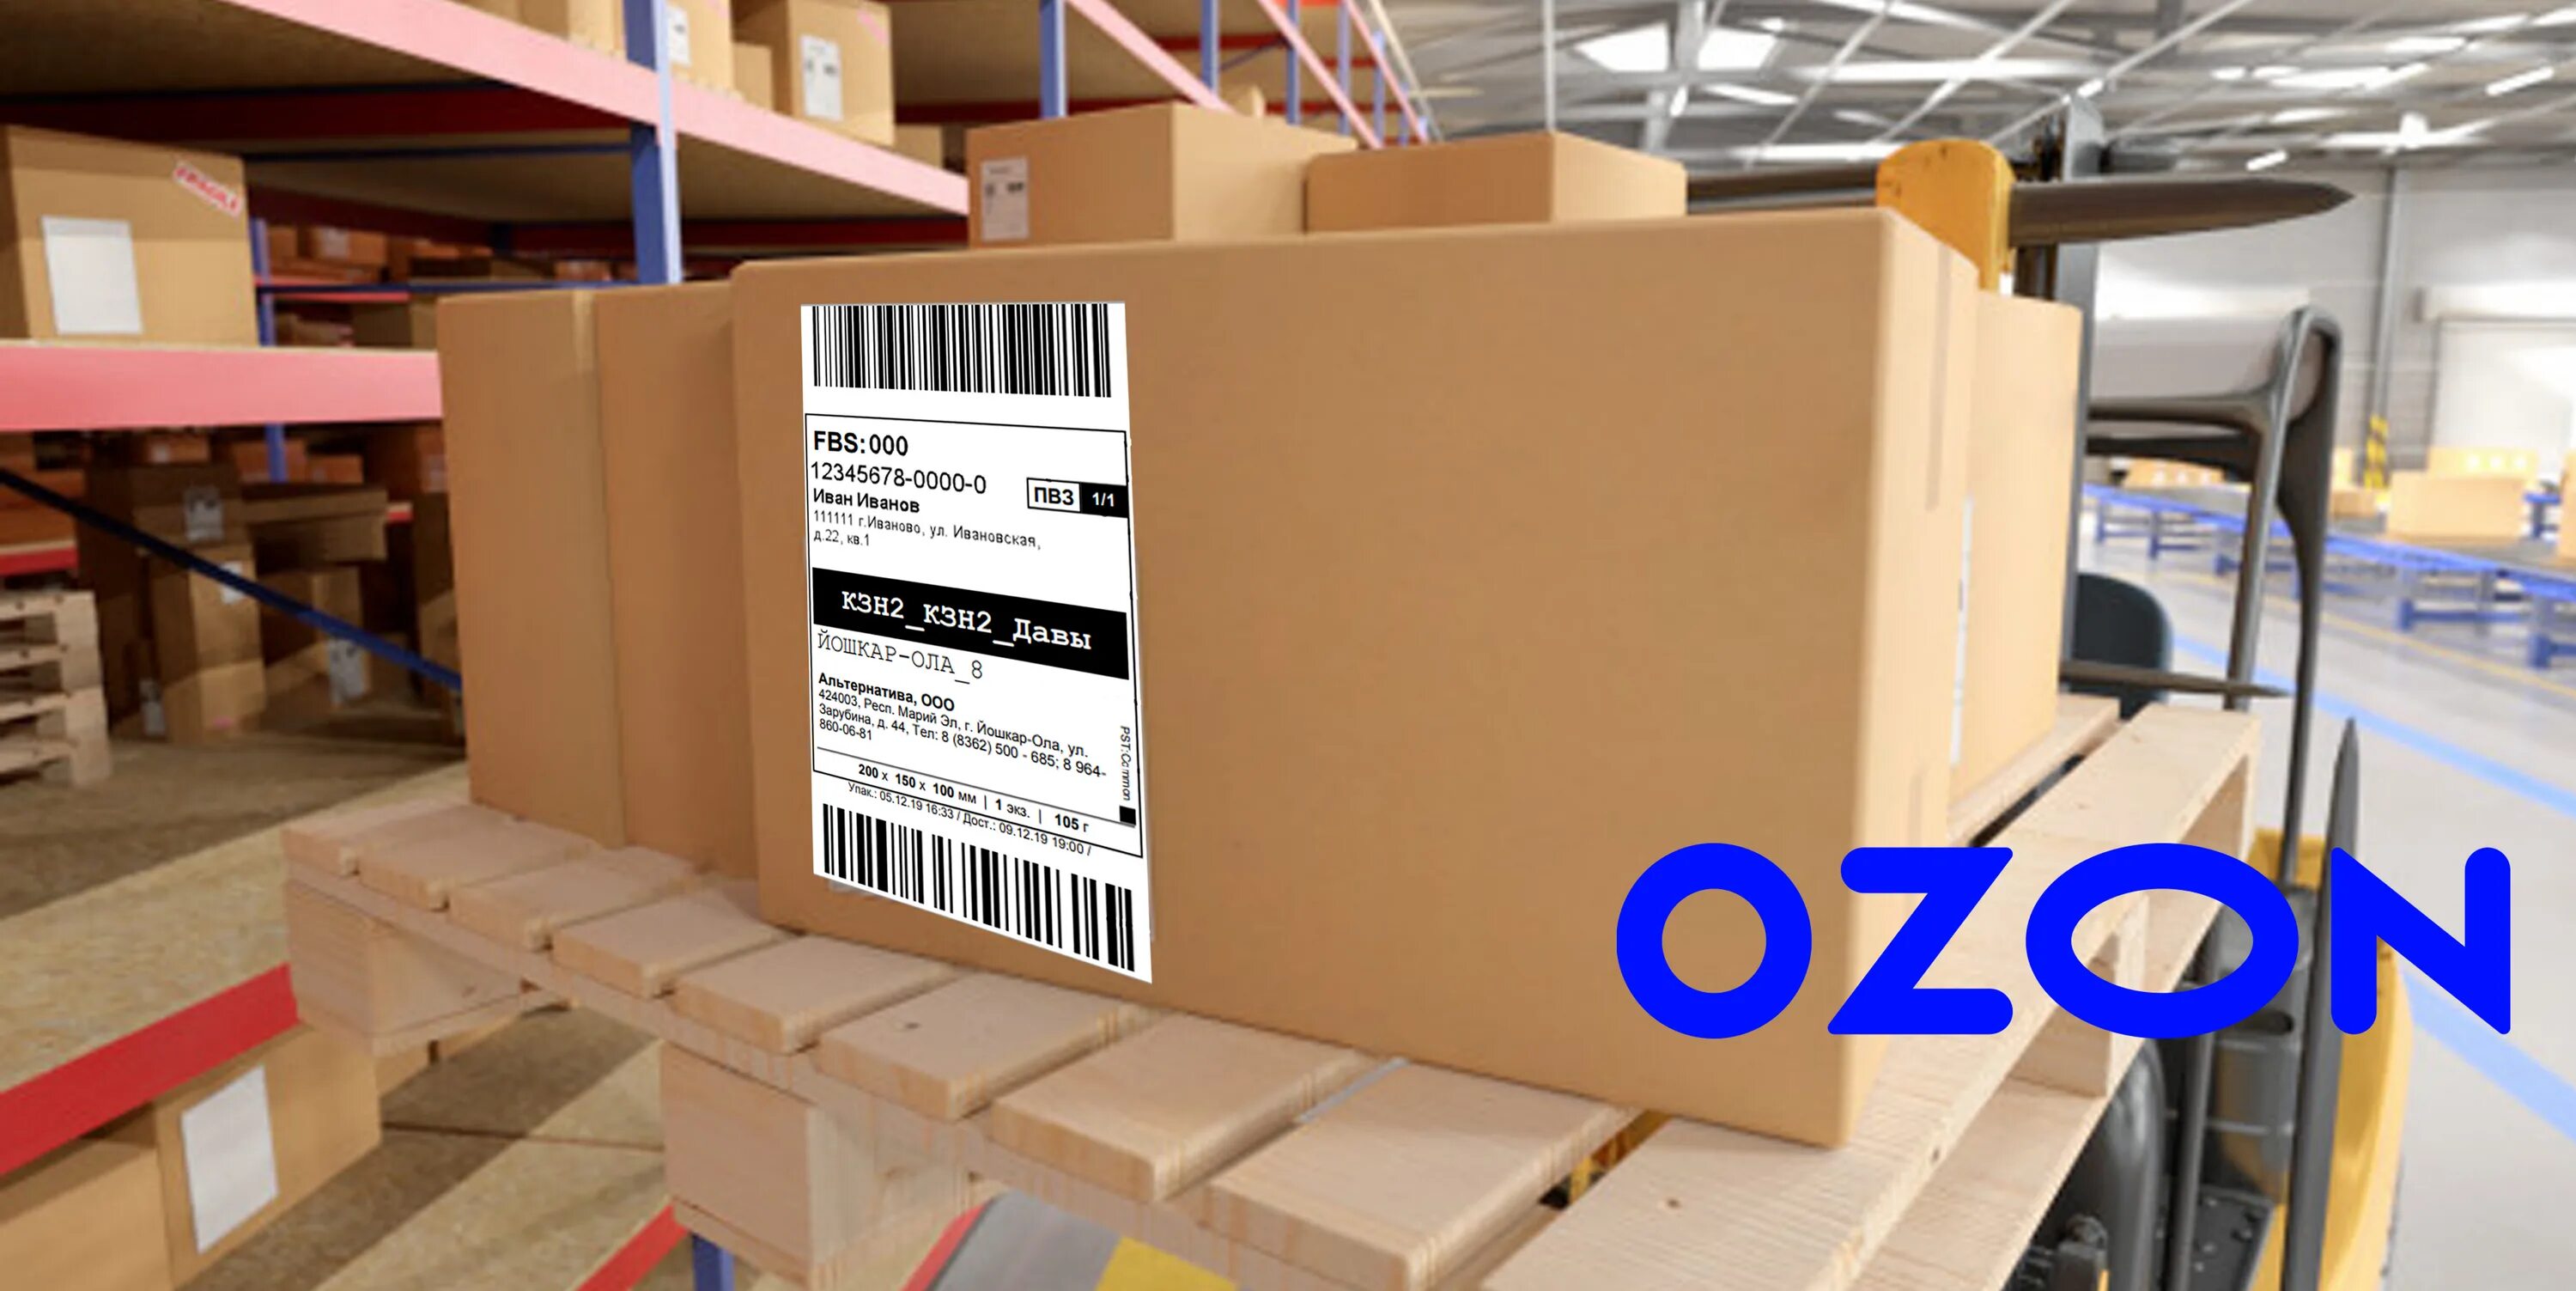 Упаковка для товаров озон pvlogistic ru. Этикетка товара. Этикетка на упаковку товара. Бирки для склада. Этикетки на коробки Озон.